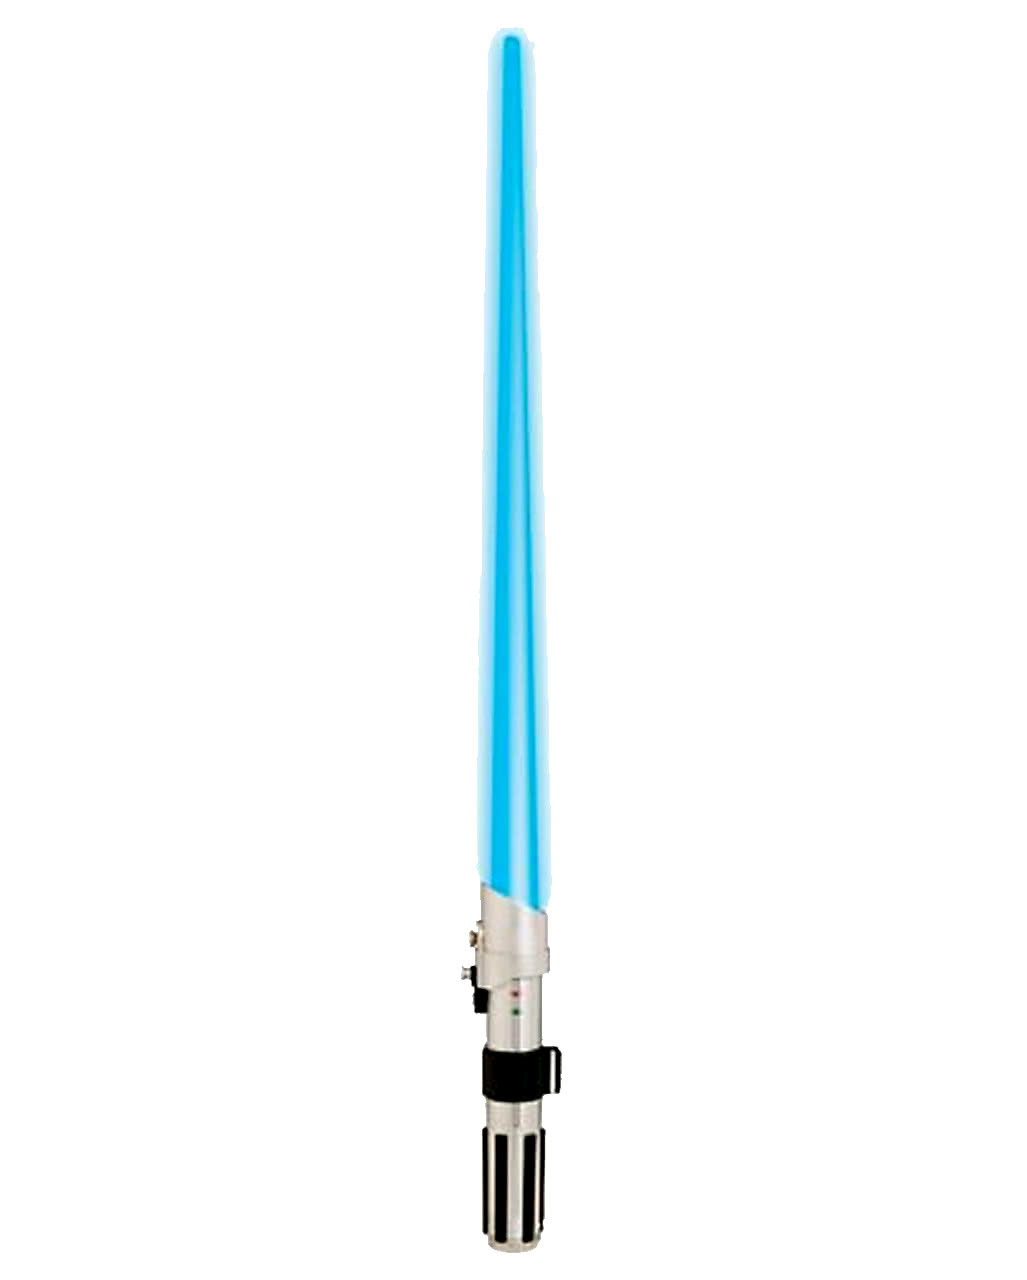 Anakin Skywalker Lichtschwert Star Wars Fanartikel günstig kaufen